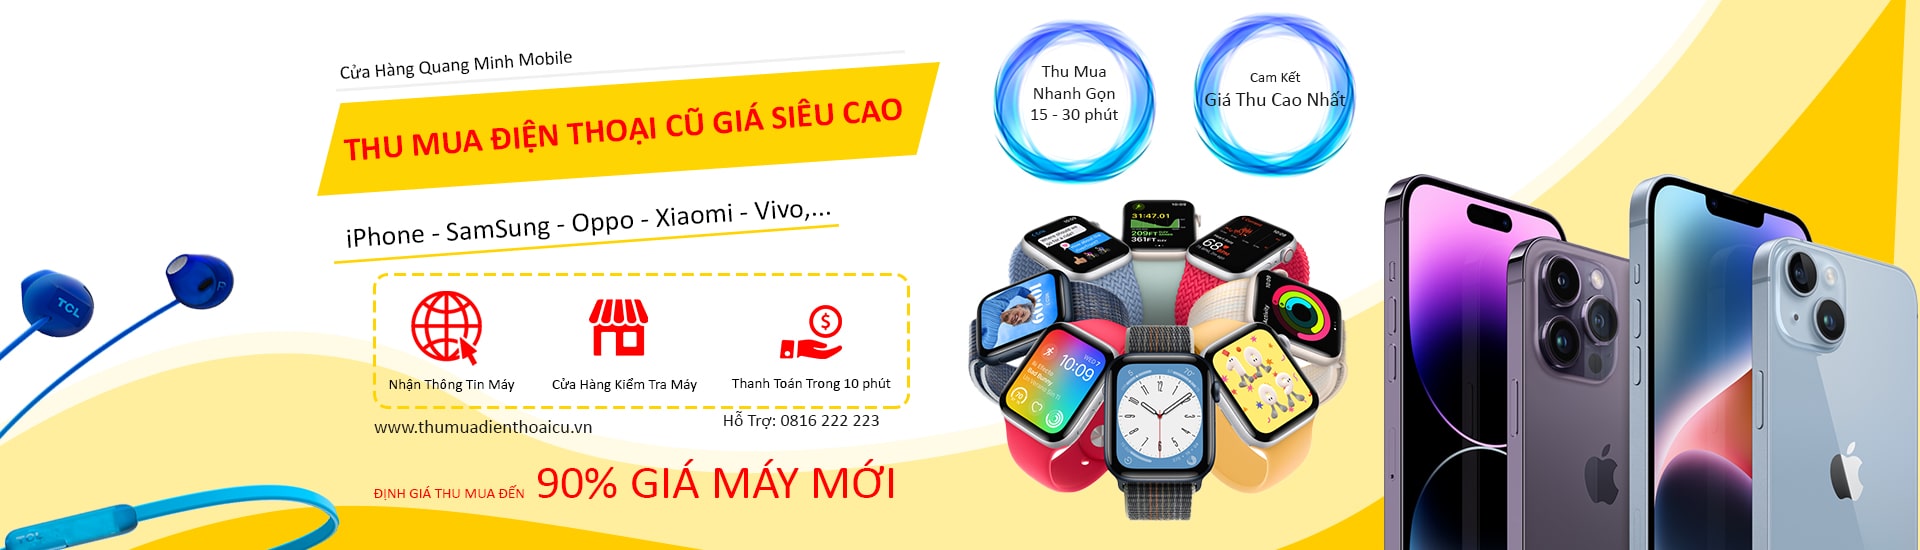 Thu mua điện thoại cũ giá cao - Quang Minh Mobile